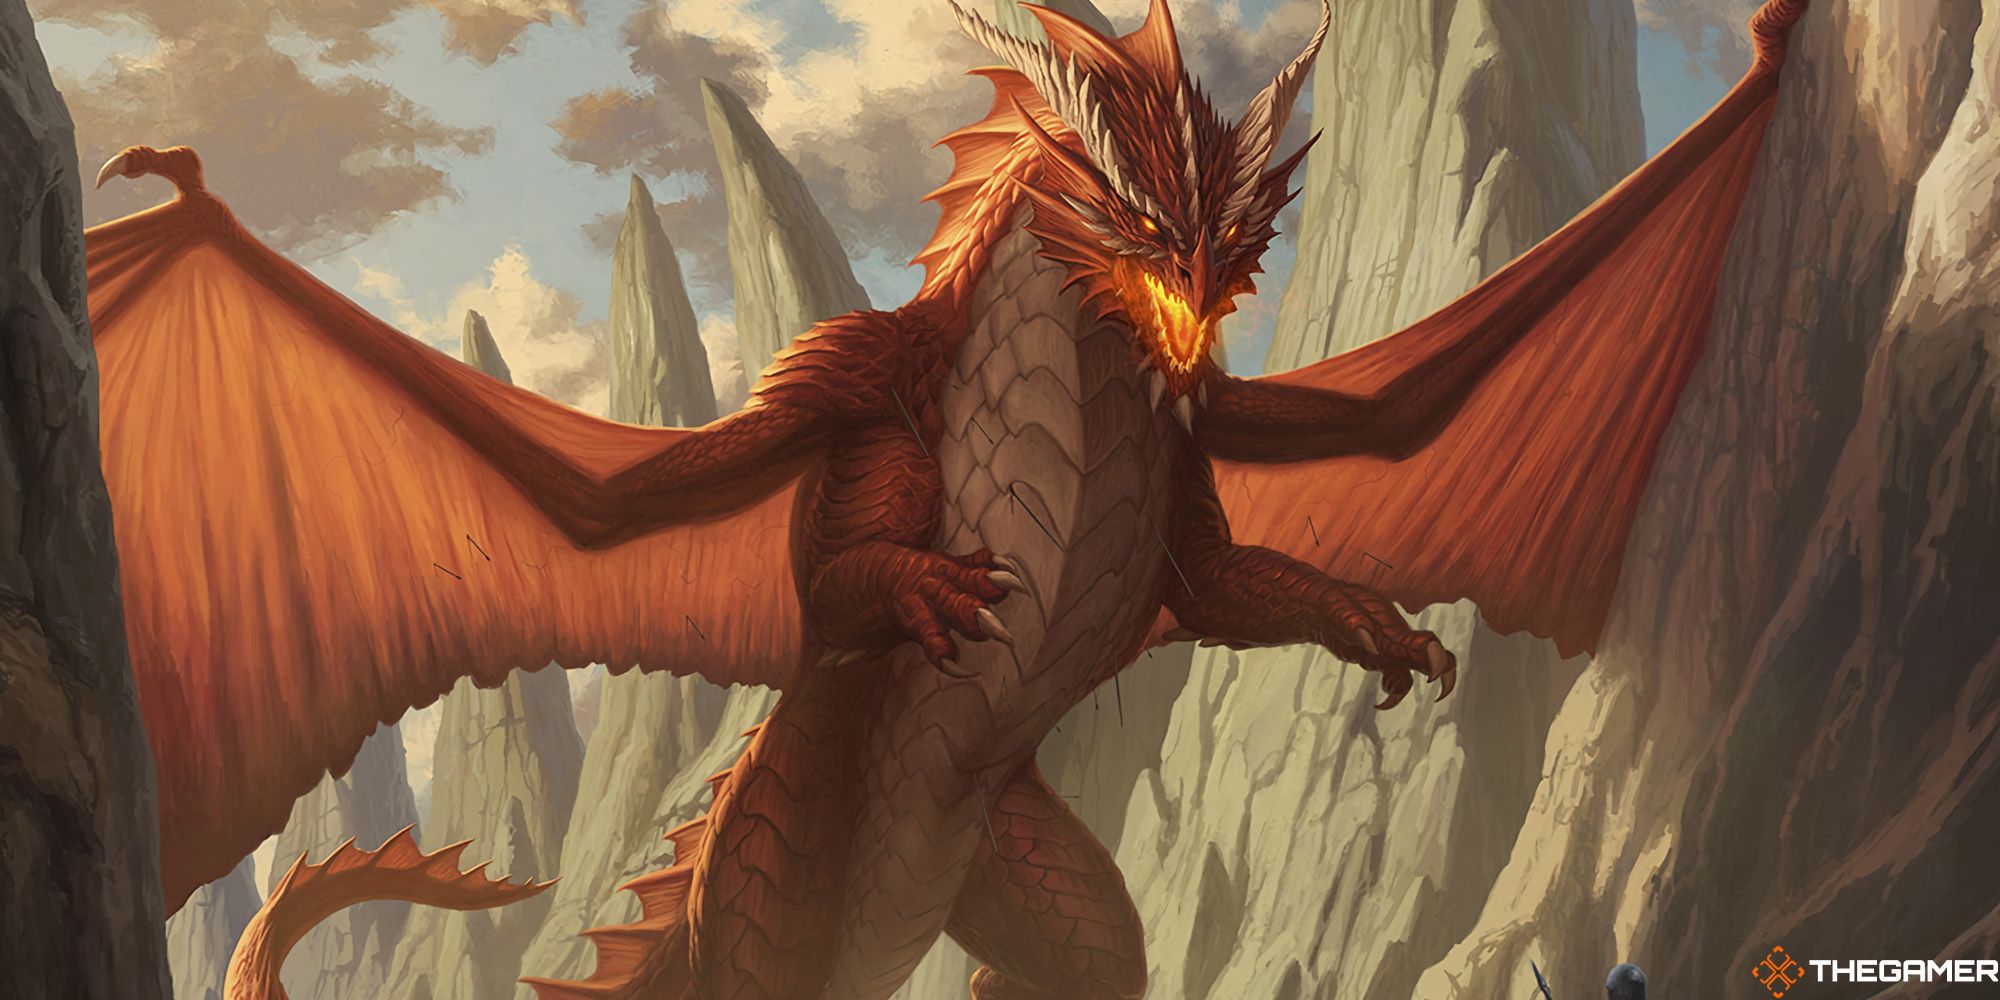 Wrathful Red Dragon by Dan Scott